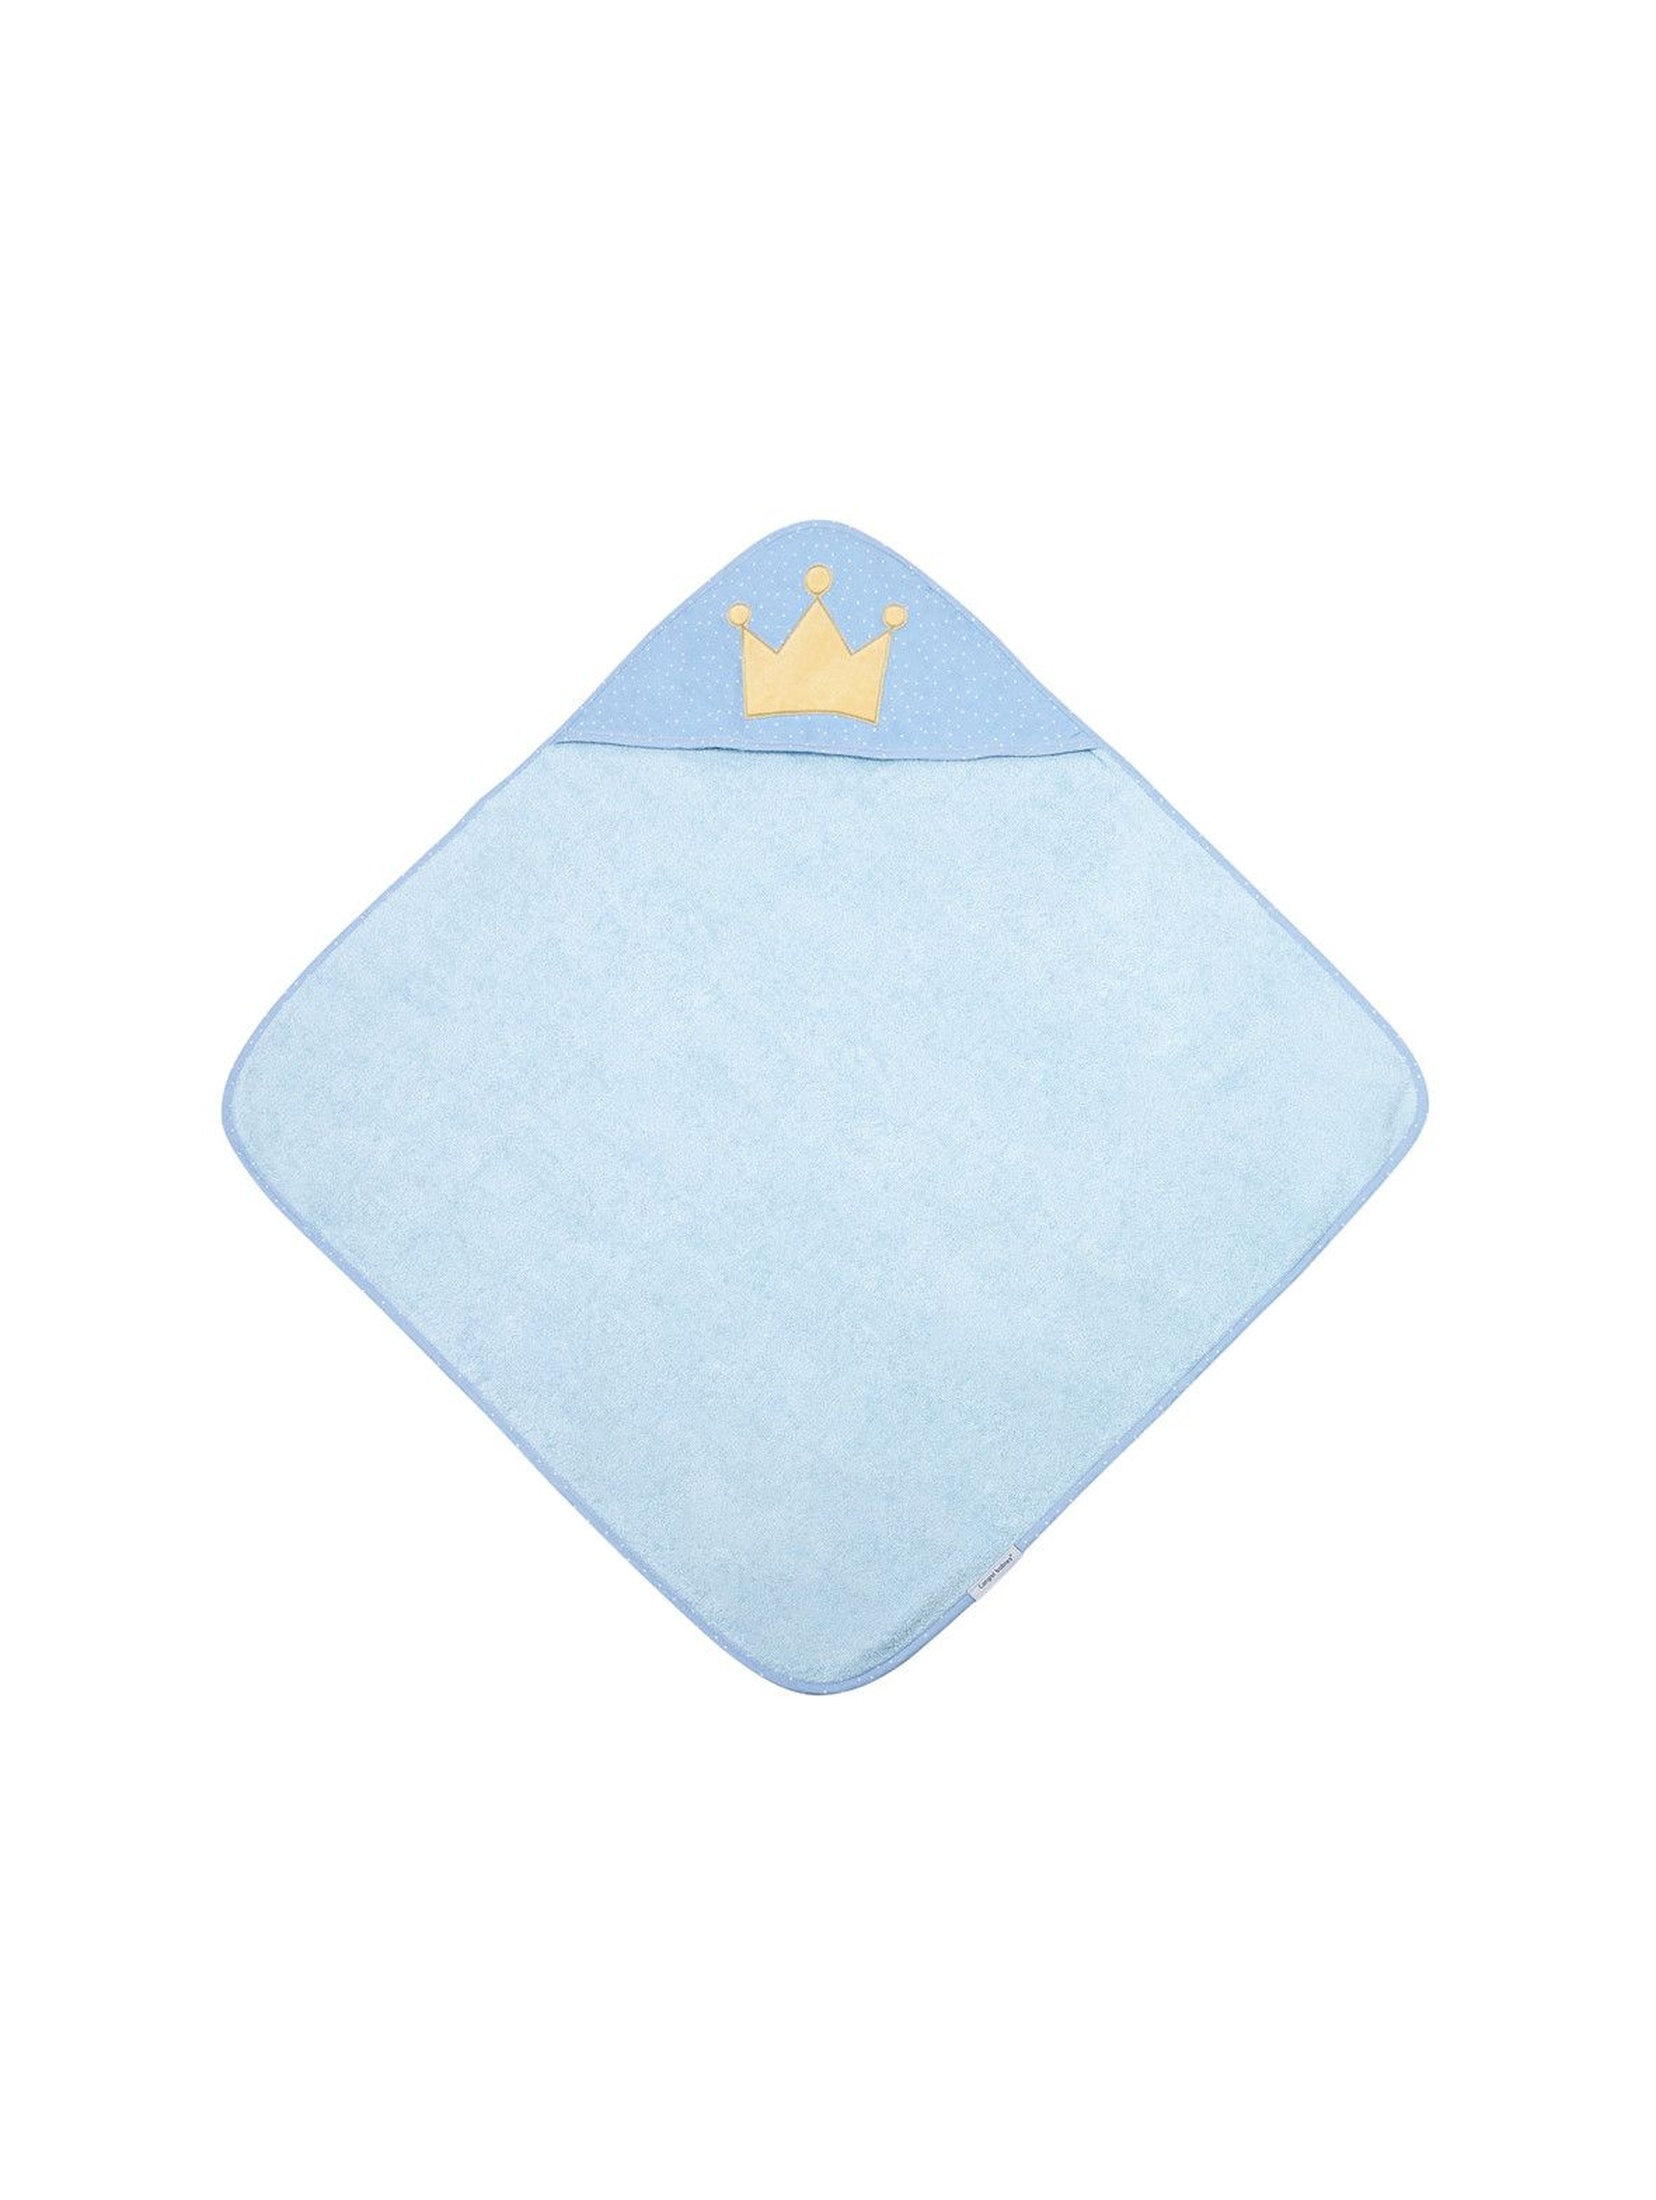 Okrycie kąpielowe dla niemowląt  King- niebieskie 85x85cm